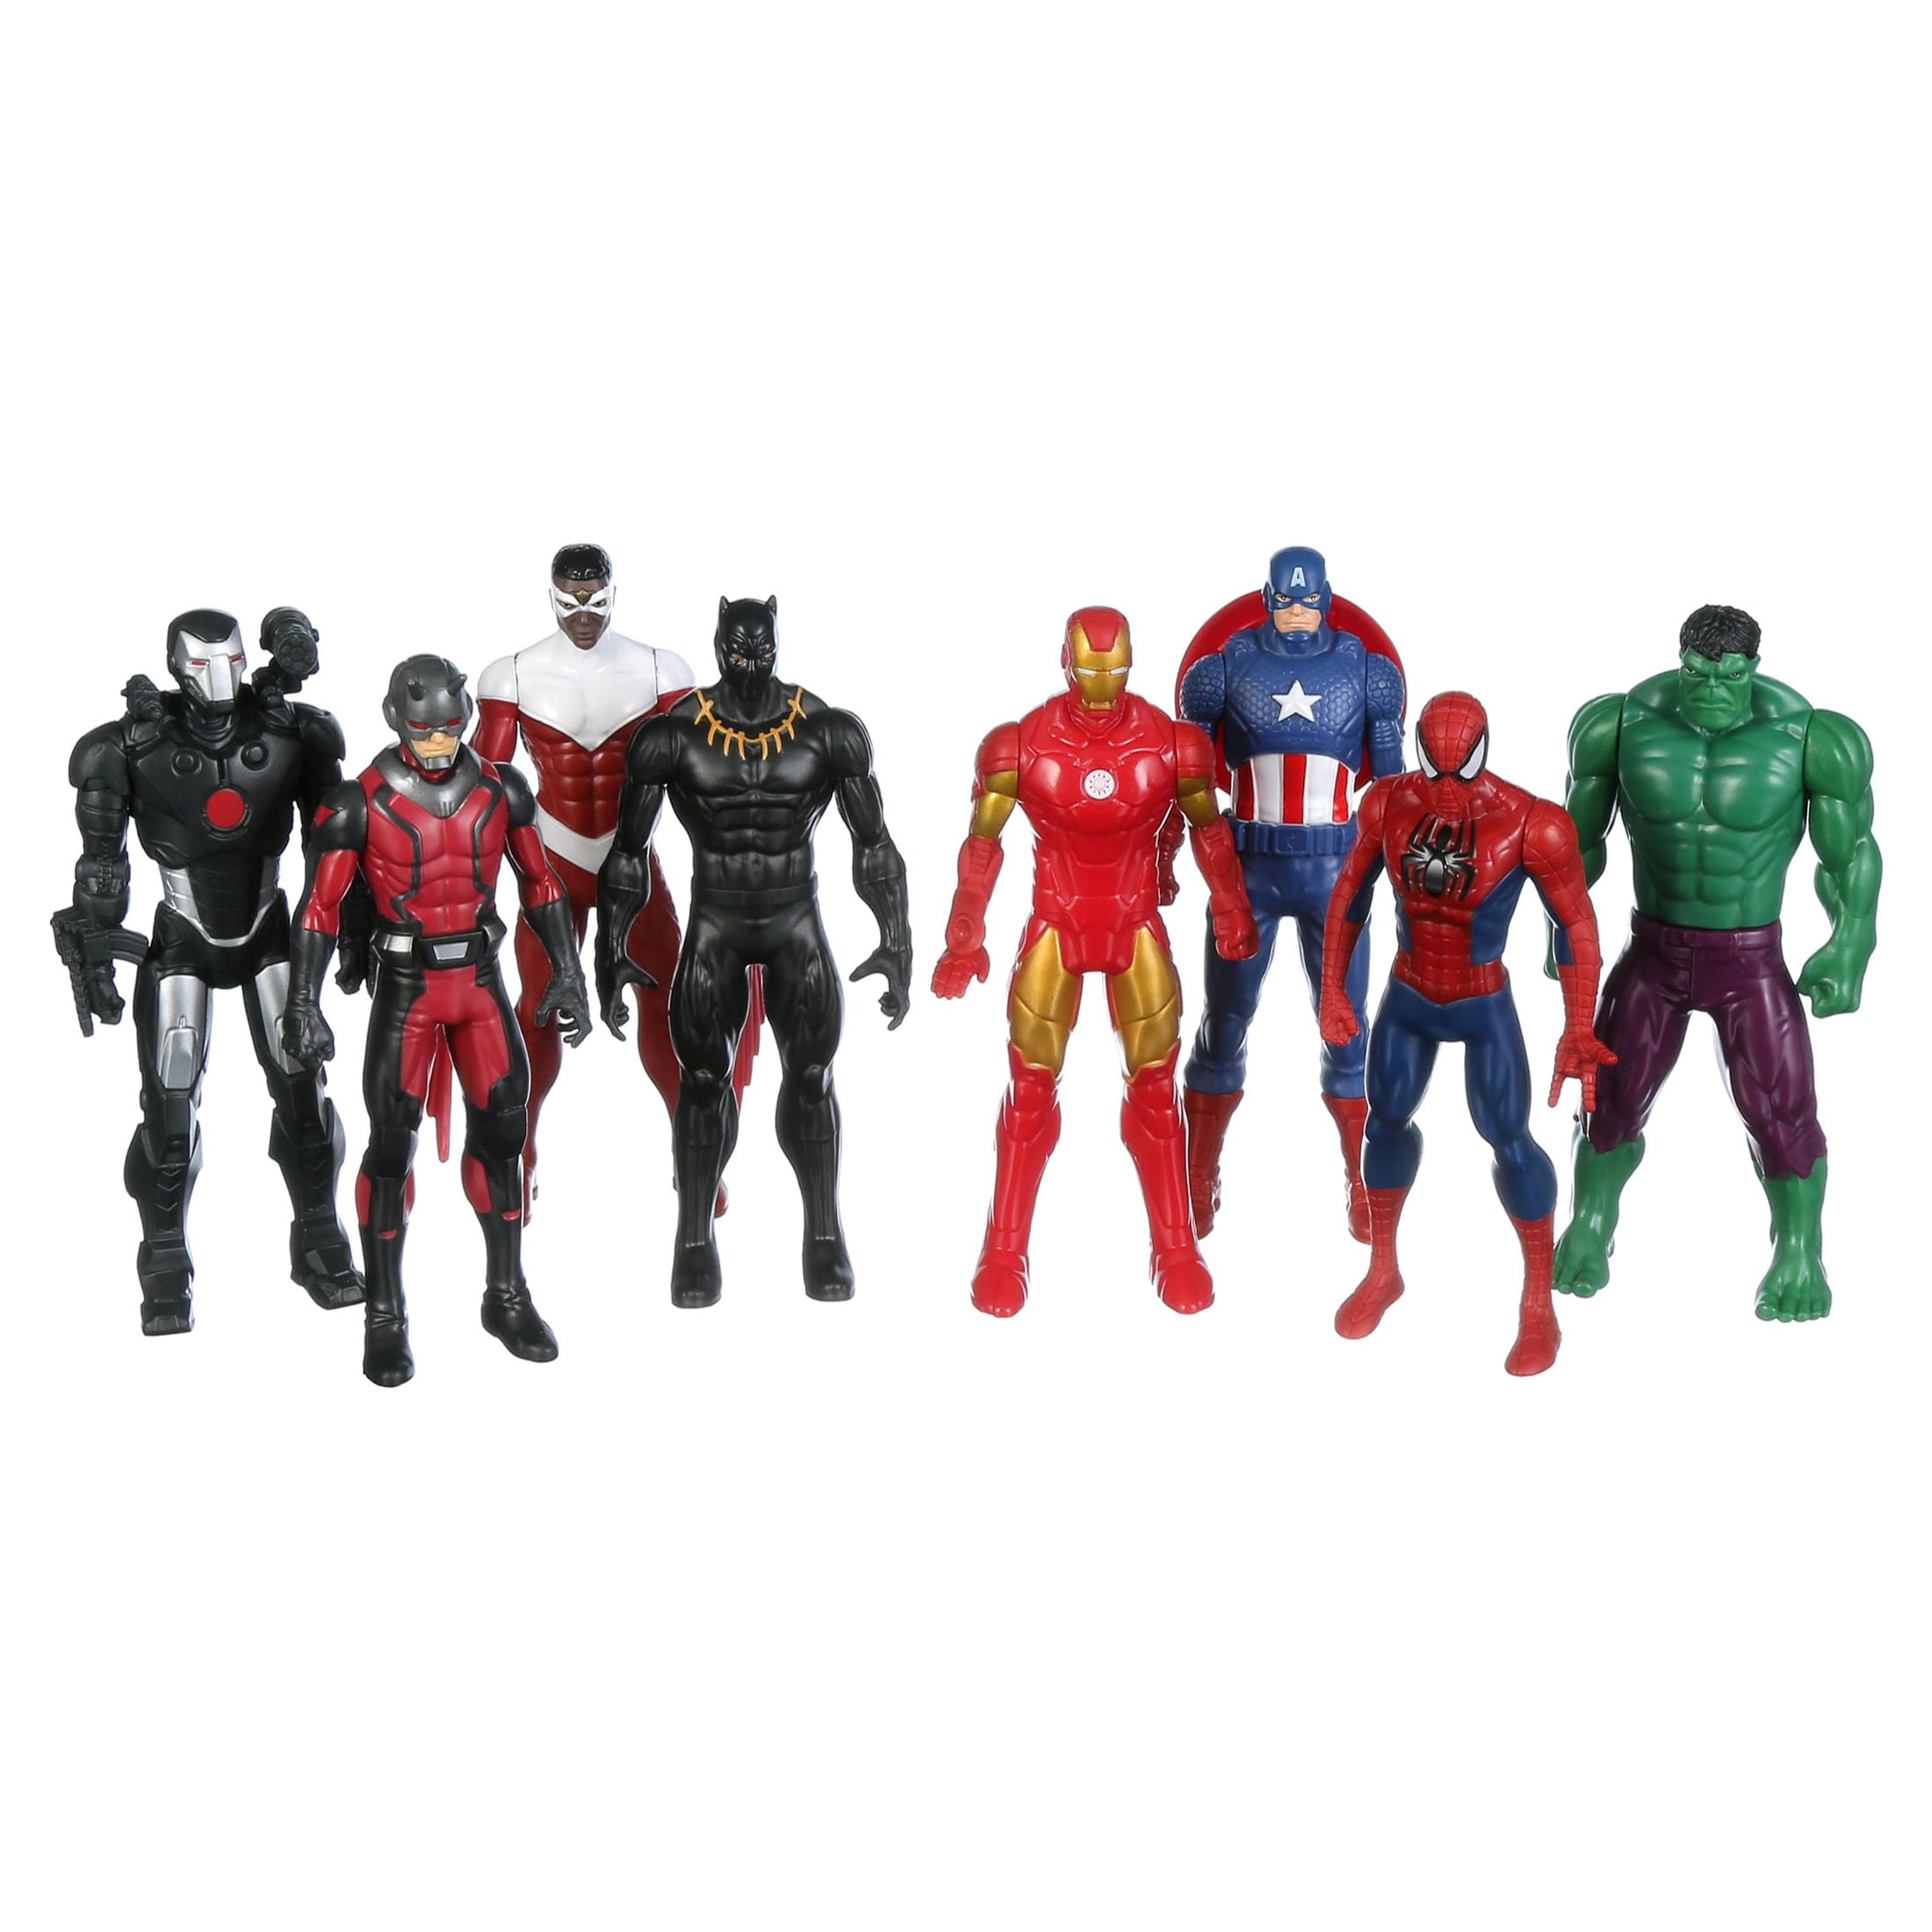 Marvel Avengers Ultimate Protectors Pack, 6 pulgadas, a escala, 8 figuras  de acción con accesorios, juguetes de superhéroe, juguetes para niños y